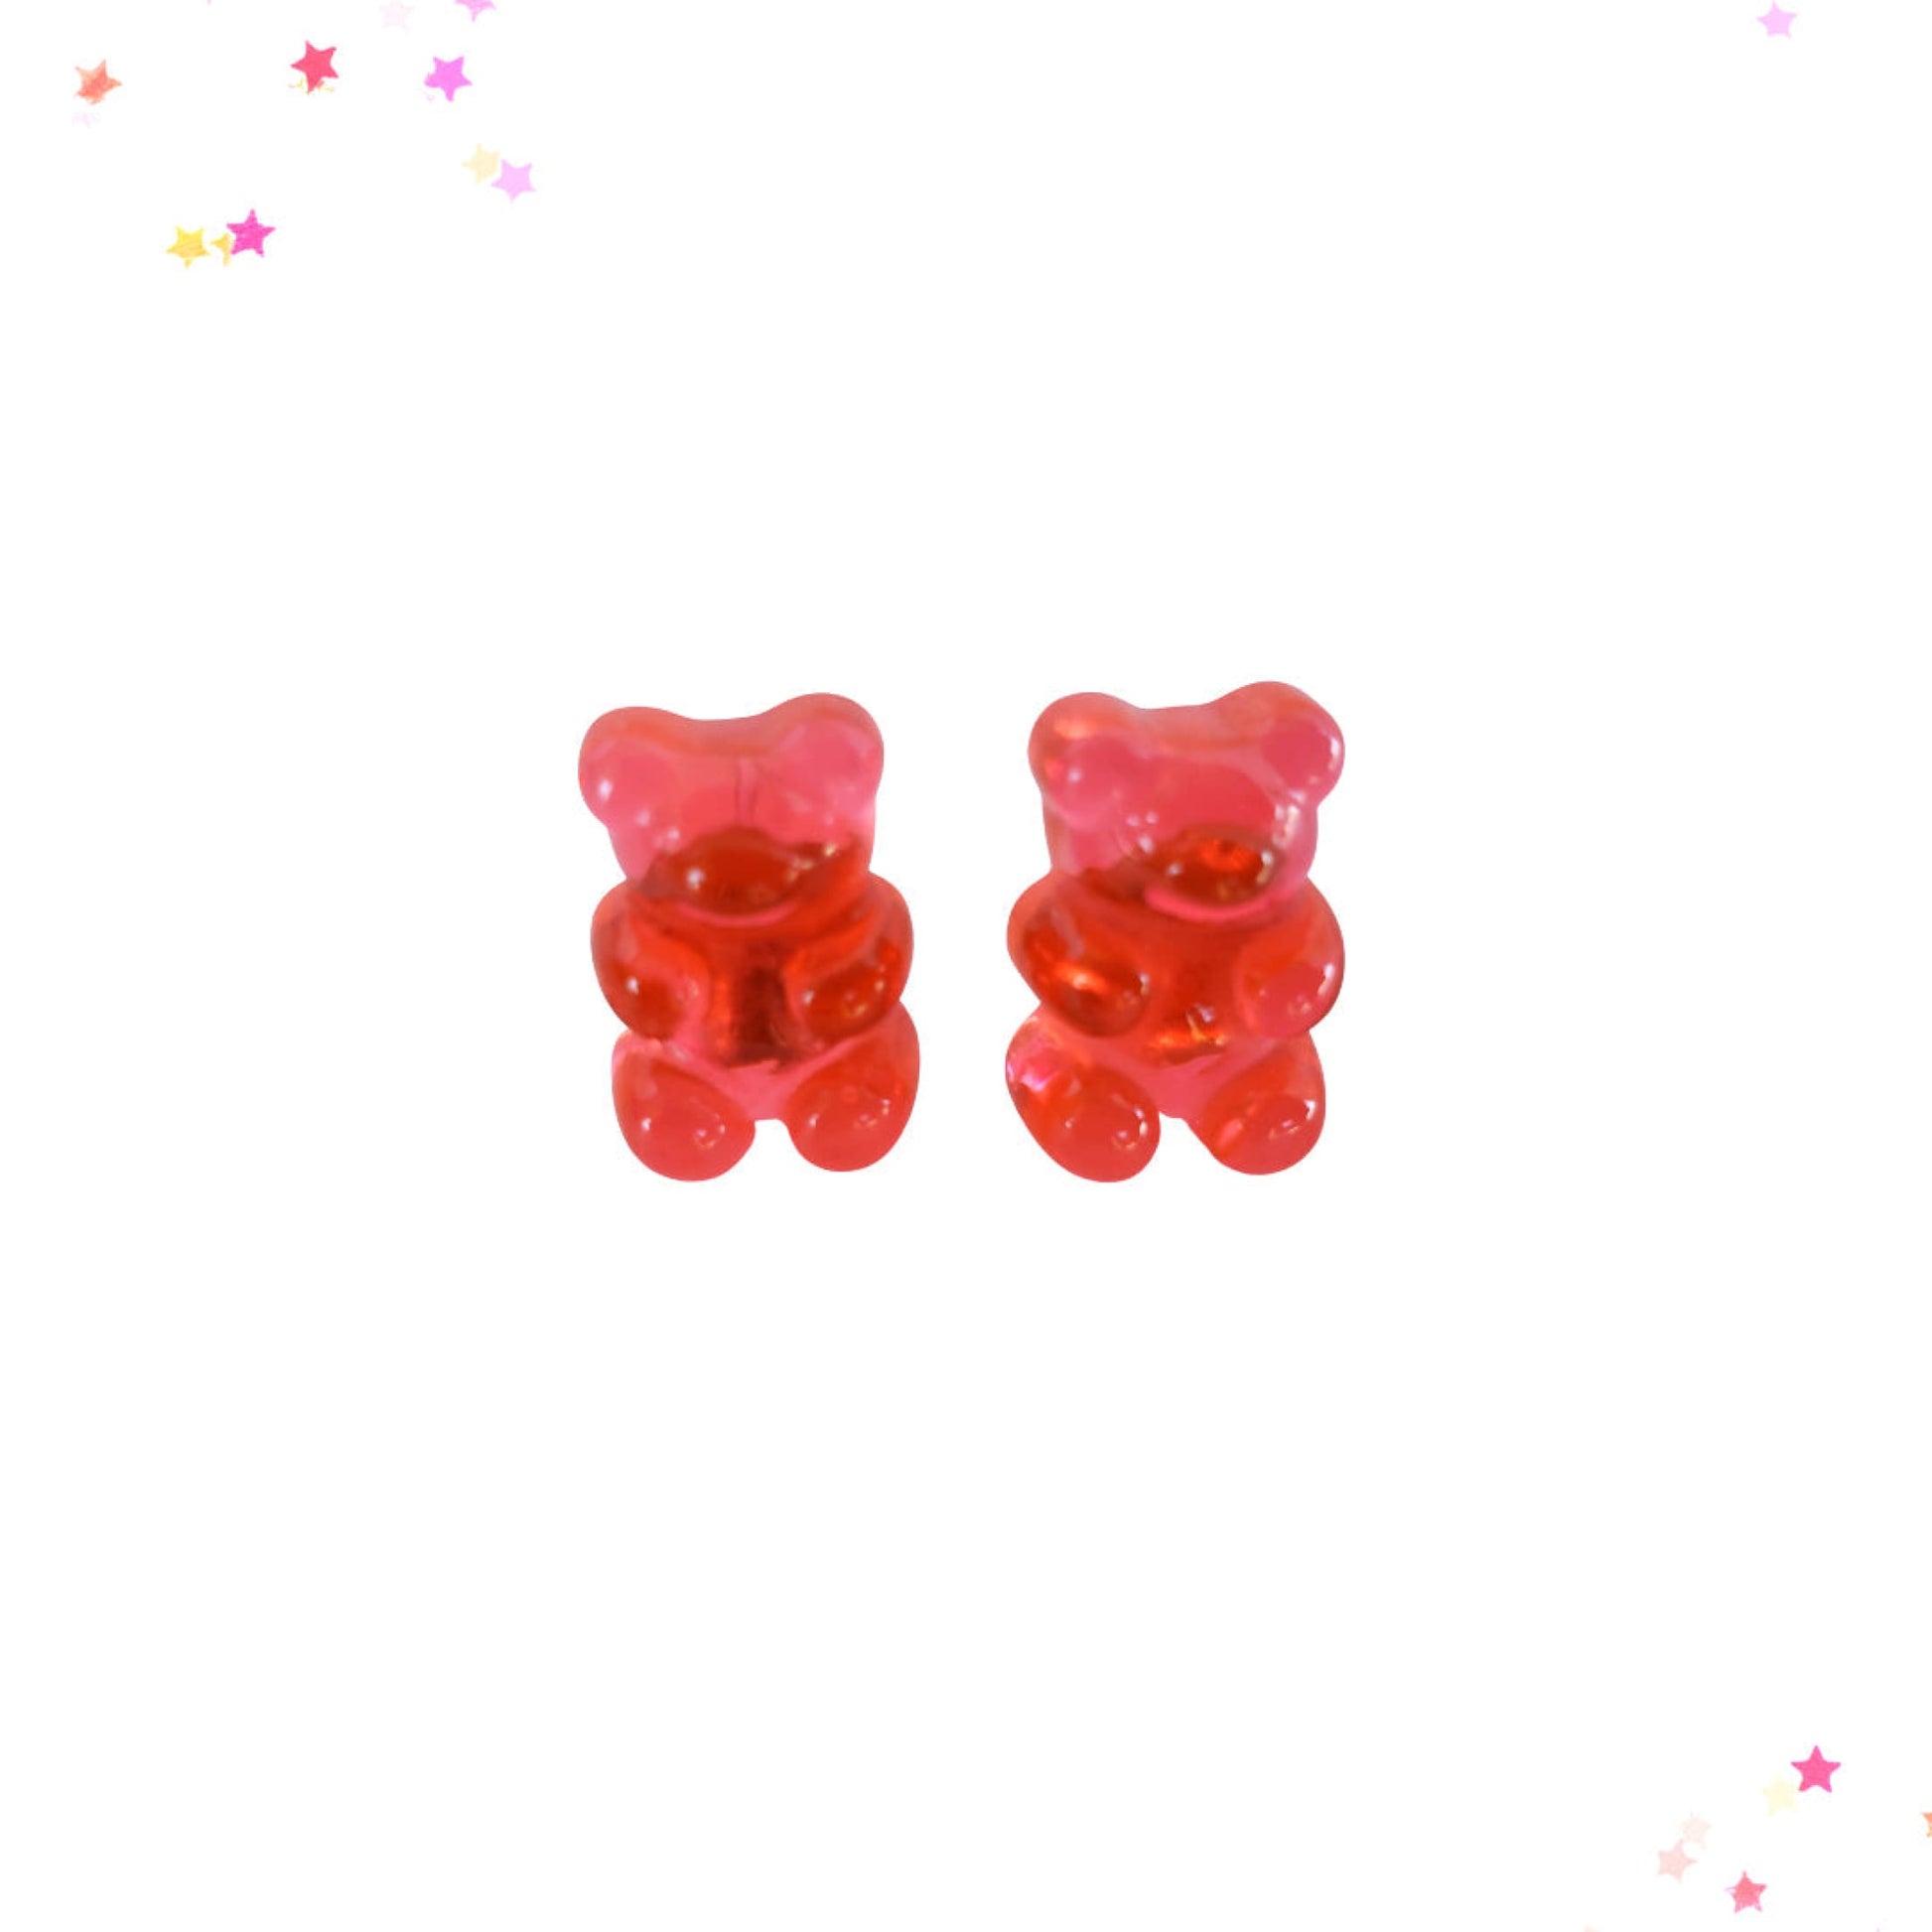 Gummy Bear Post Earrings in Watermelon from Confetti Kitty, Only 3.99